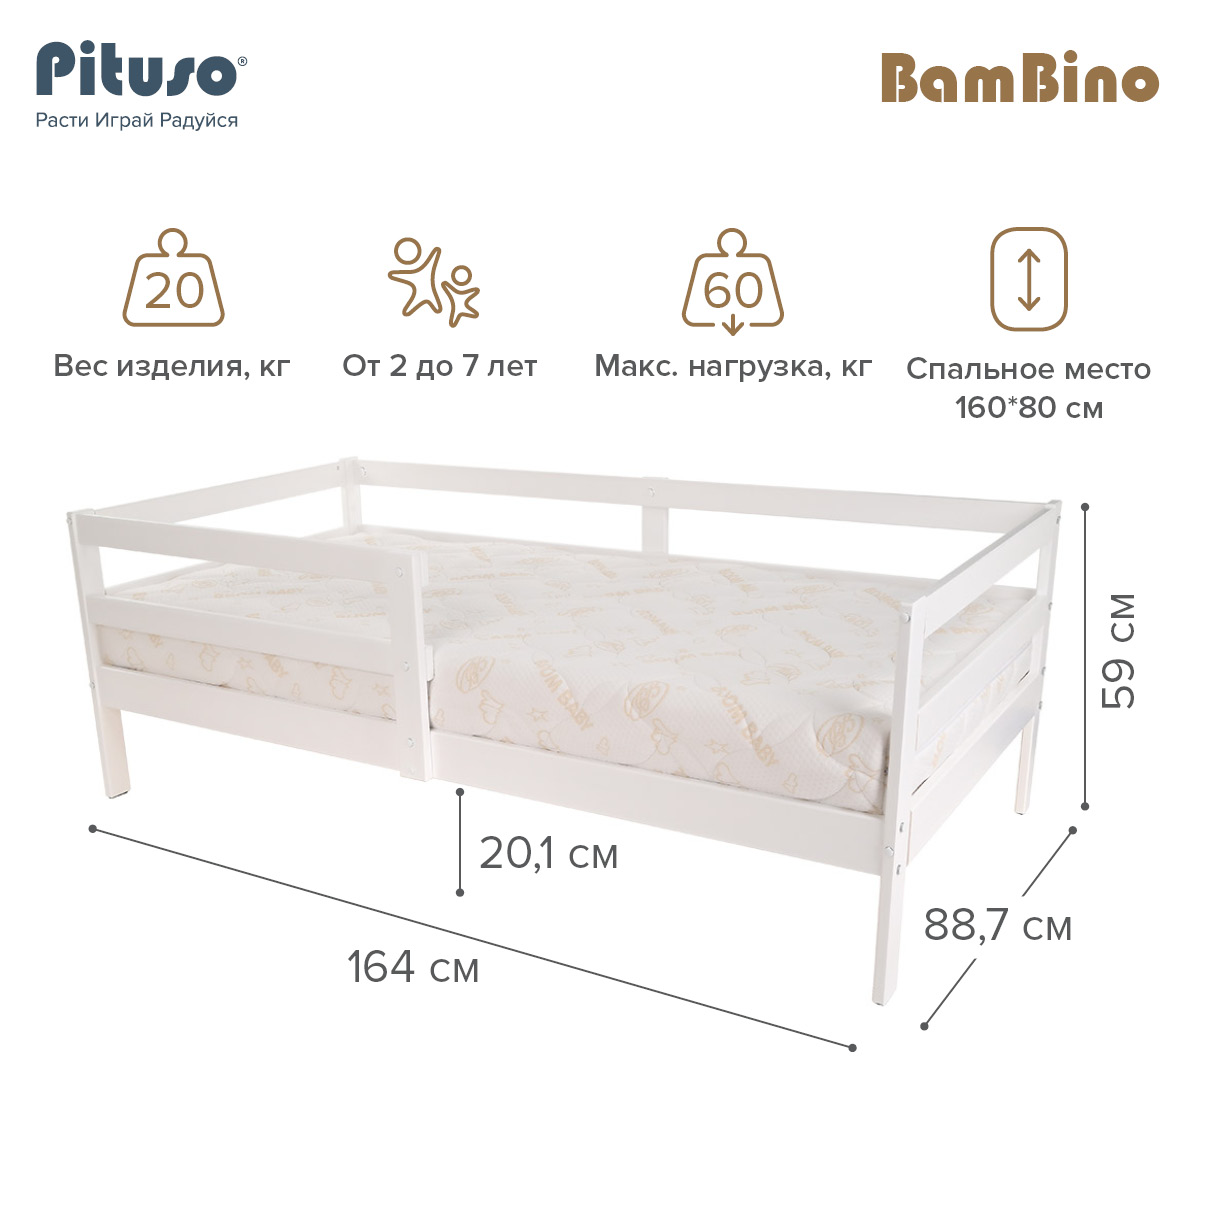 Кровать подростковая Pituso BamBino белый подростковая кровать pituso emilia j 501